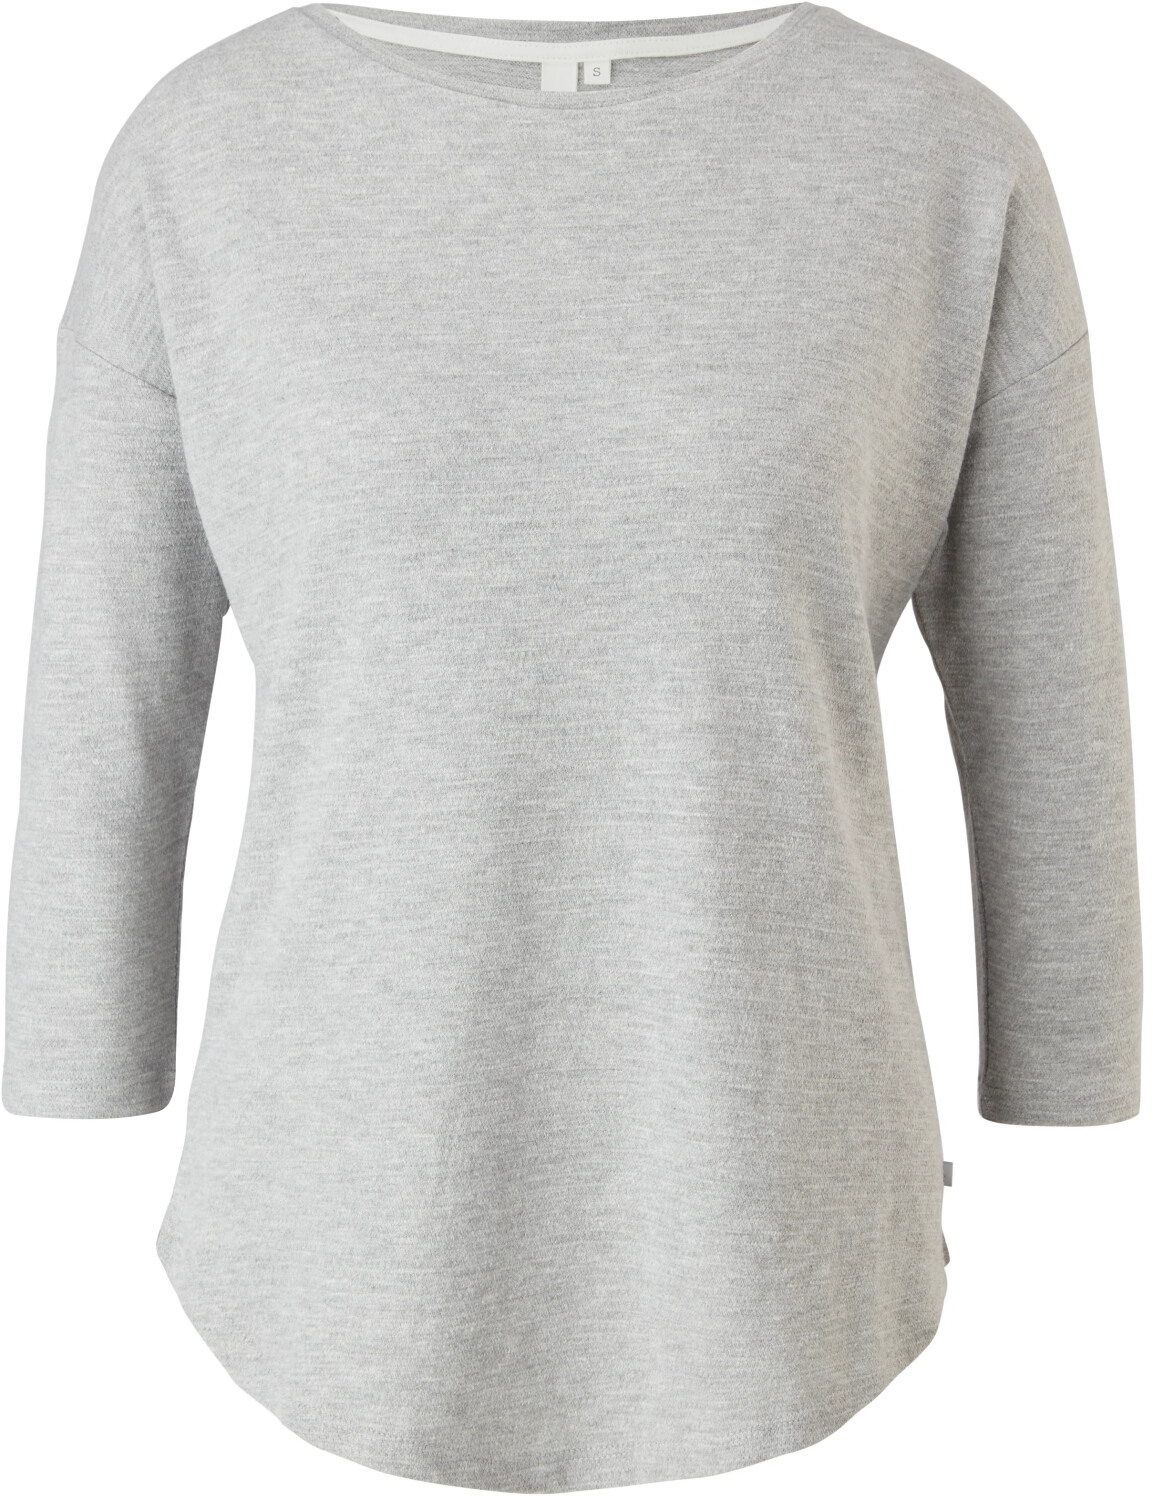 S.Oliver Jacquard-Shirt (45.899.39.X002) Baumwolle € 14,00 aus bei Preisvergleich ab 